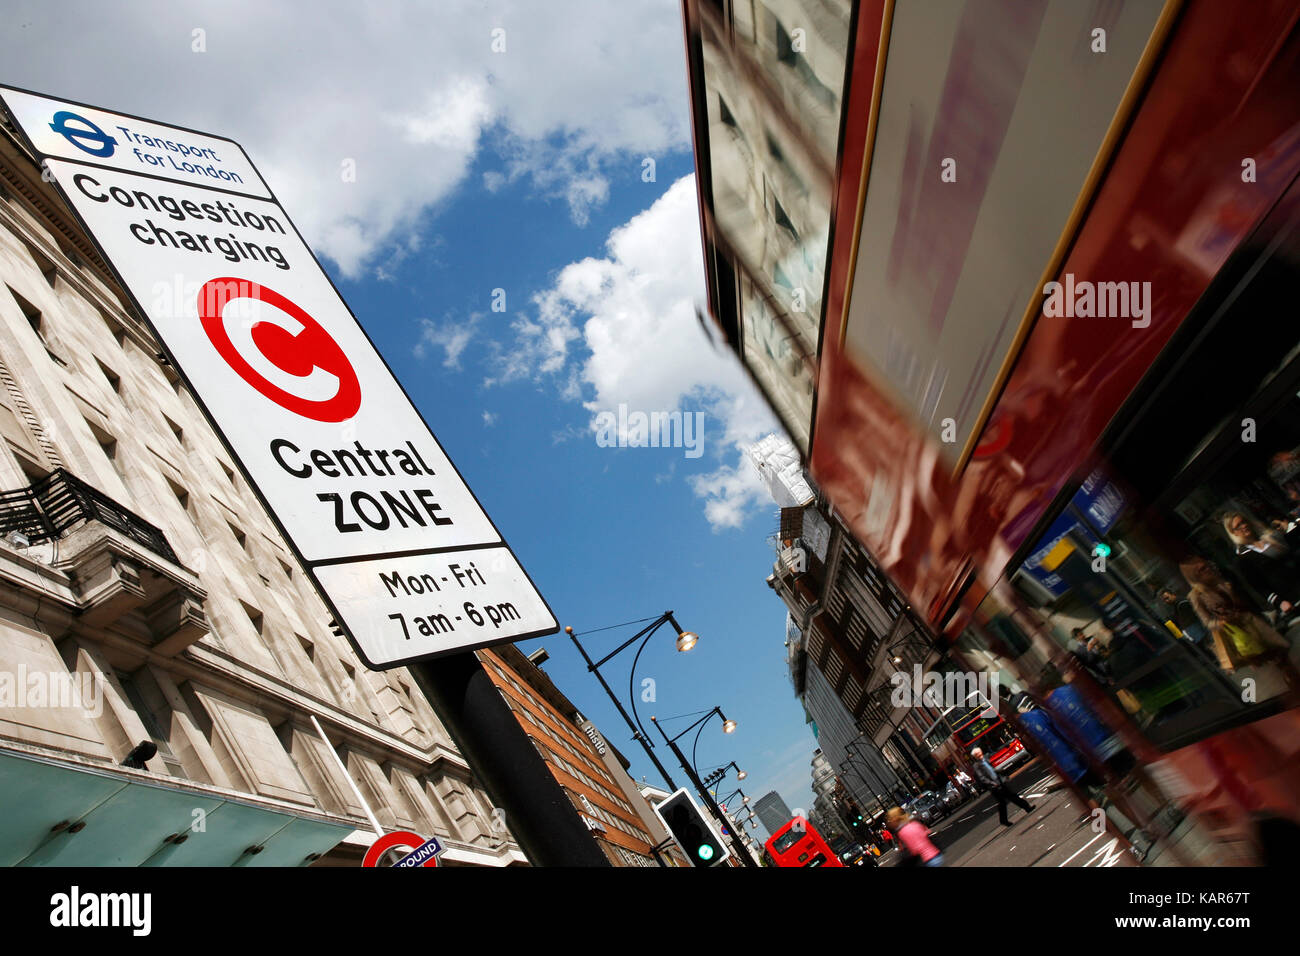 Congestion Charge Zone segno, introdotto 2003 per ridurre la congestione nel centro di Londra. il costo standard è 11,50 per ogni giorno dal lunedì al venerdì solo. Foto Stock